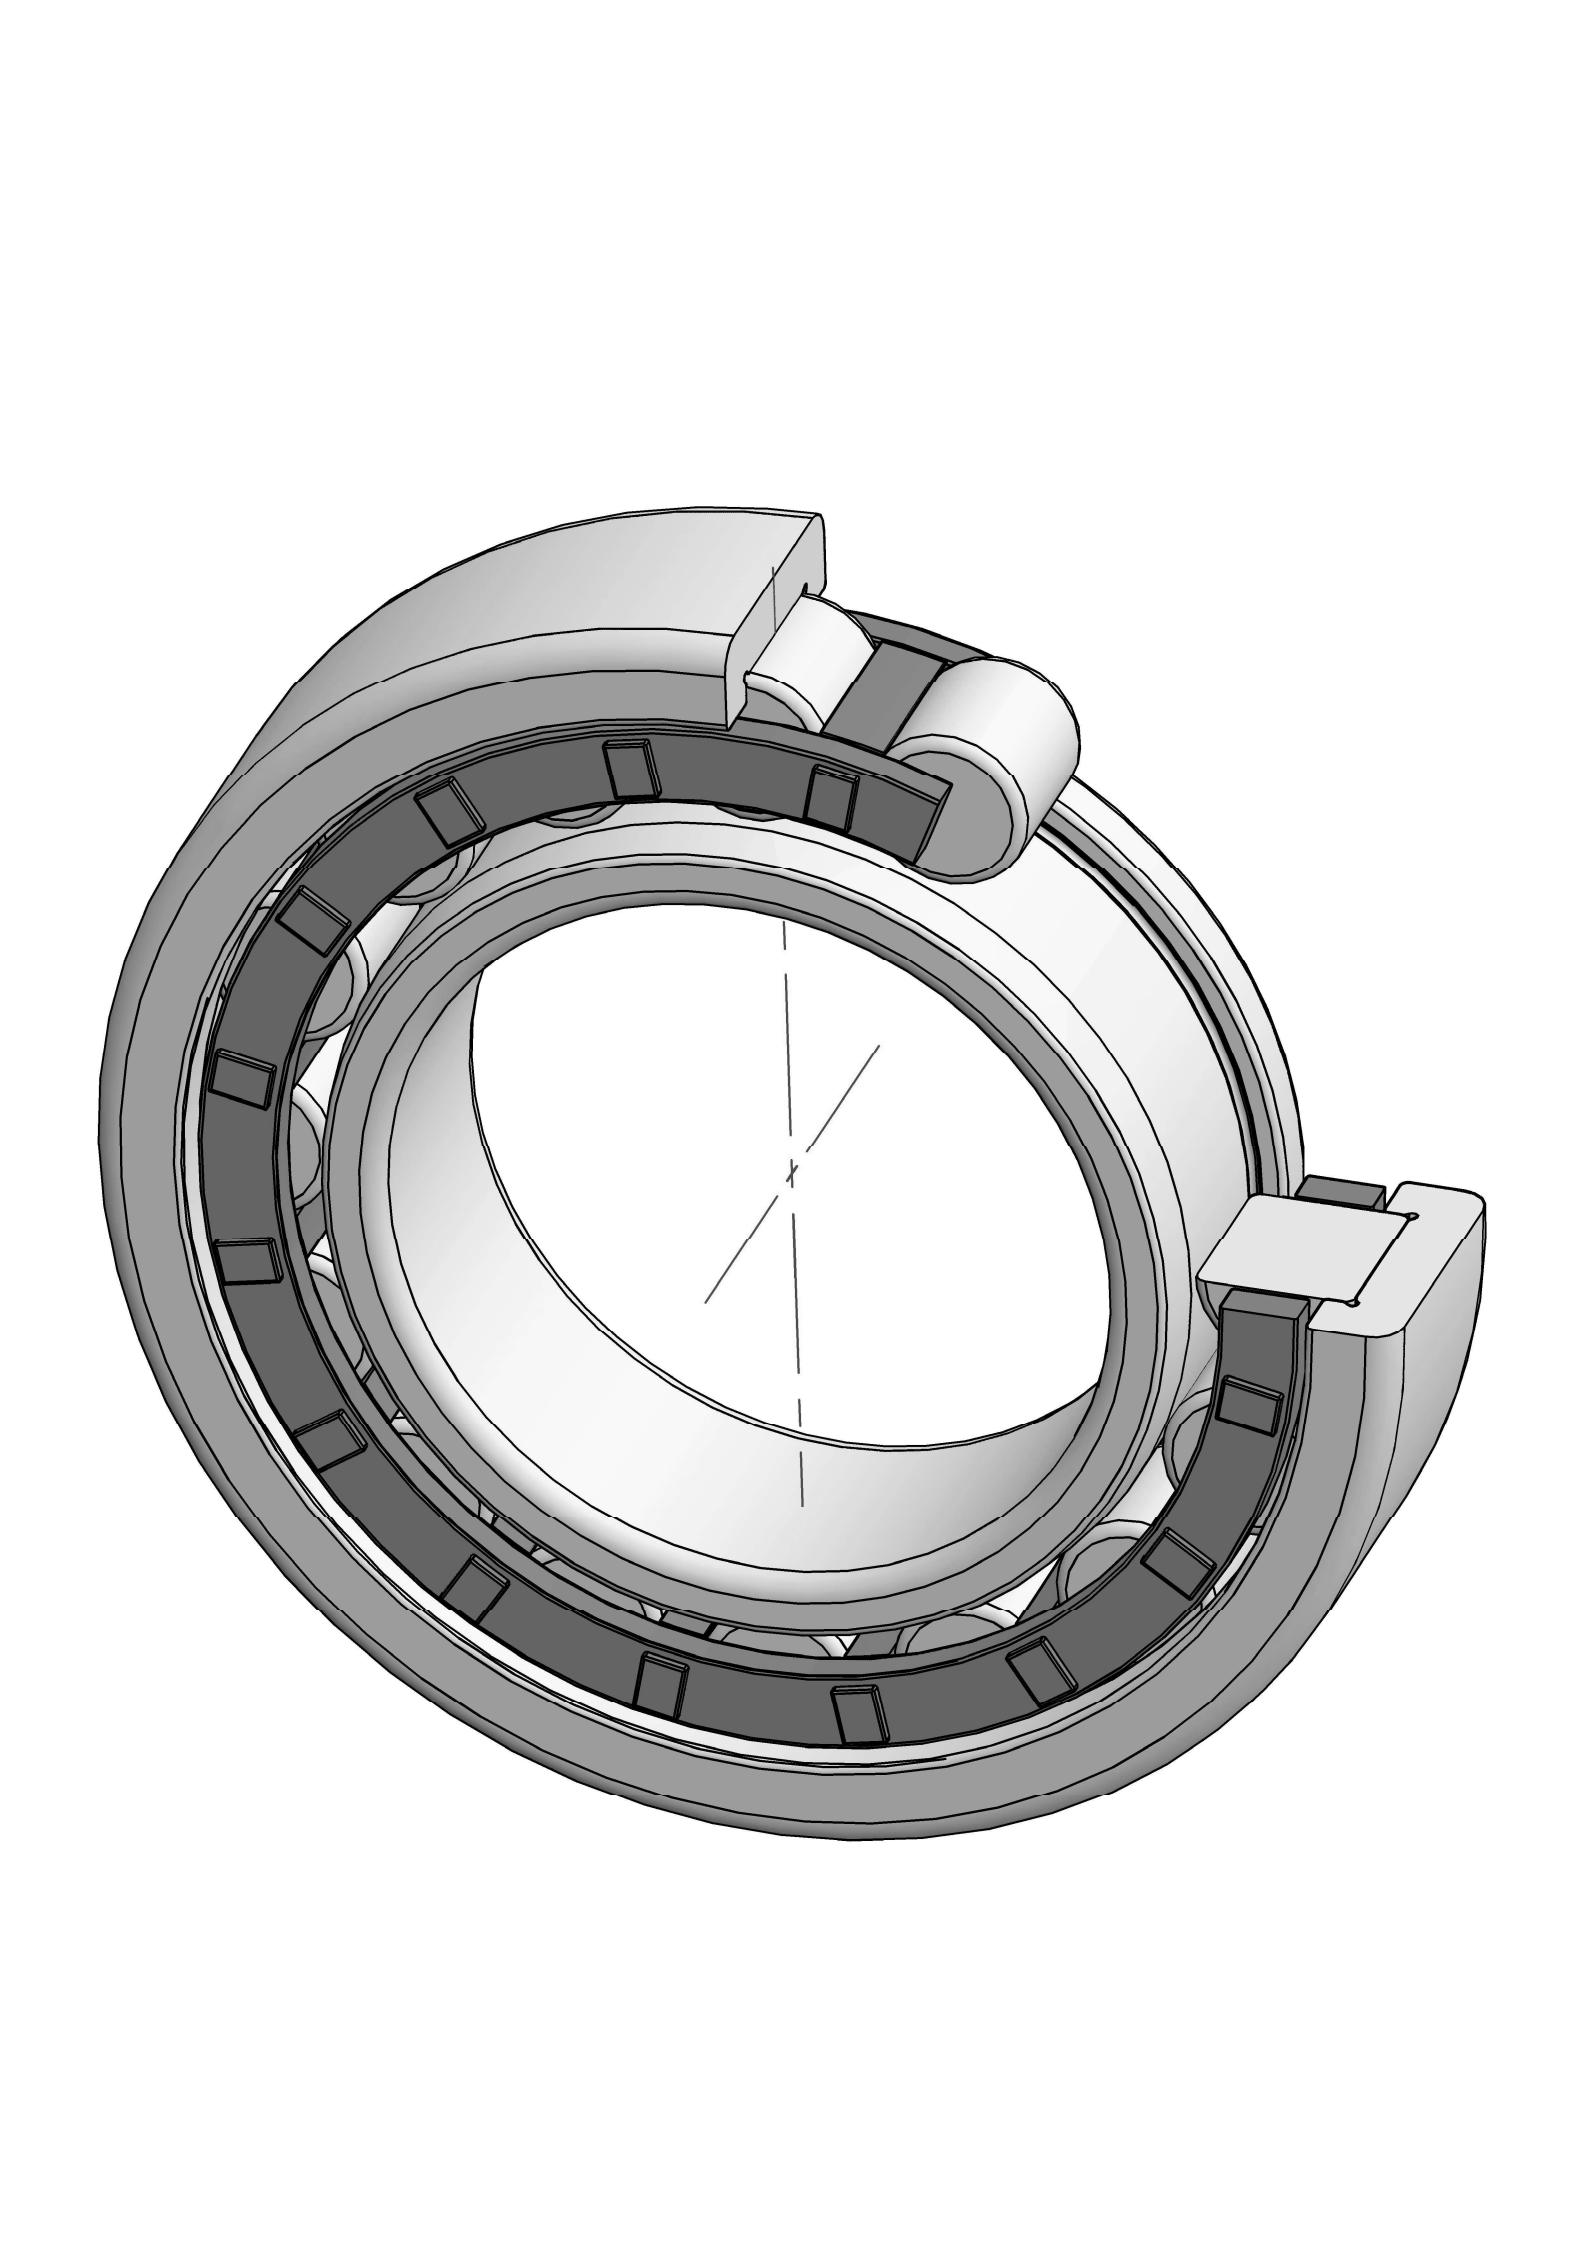 NJ2334-EM otu ahịrị cylindrical roller bearing